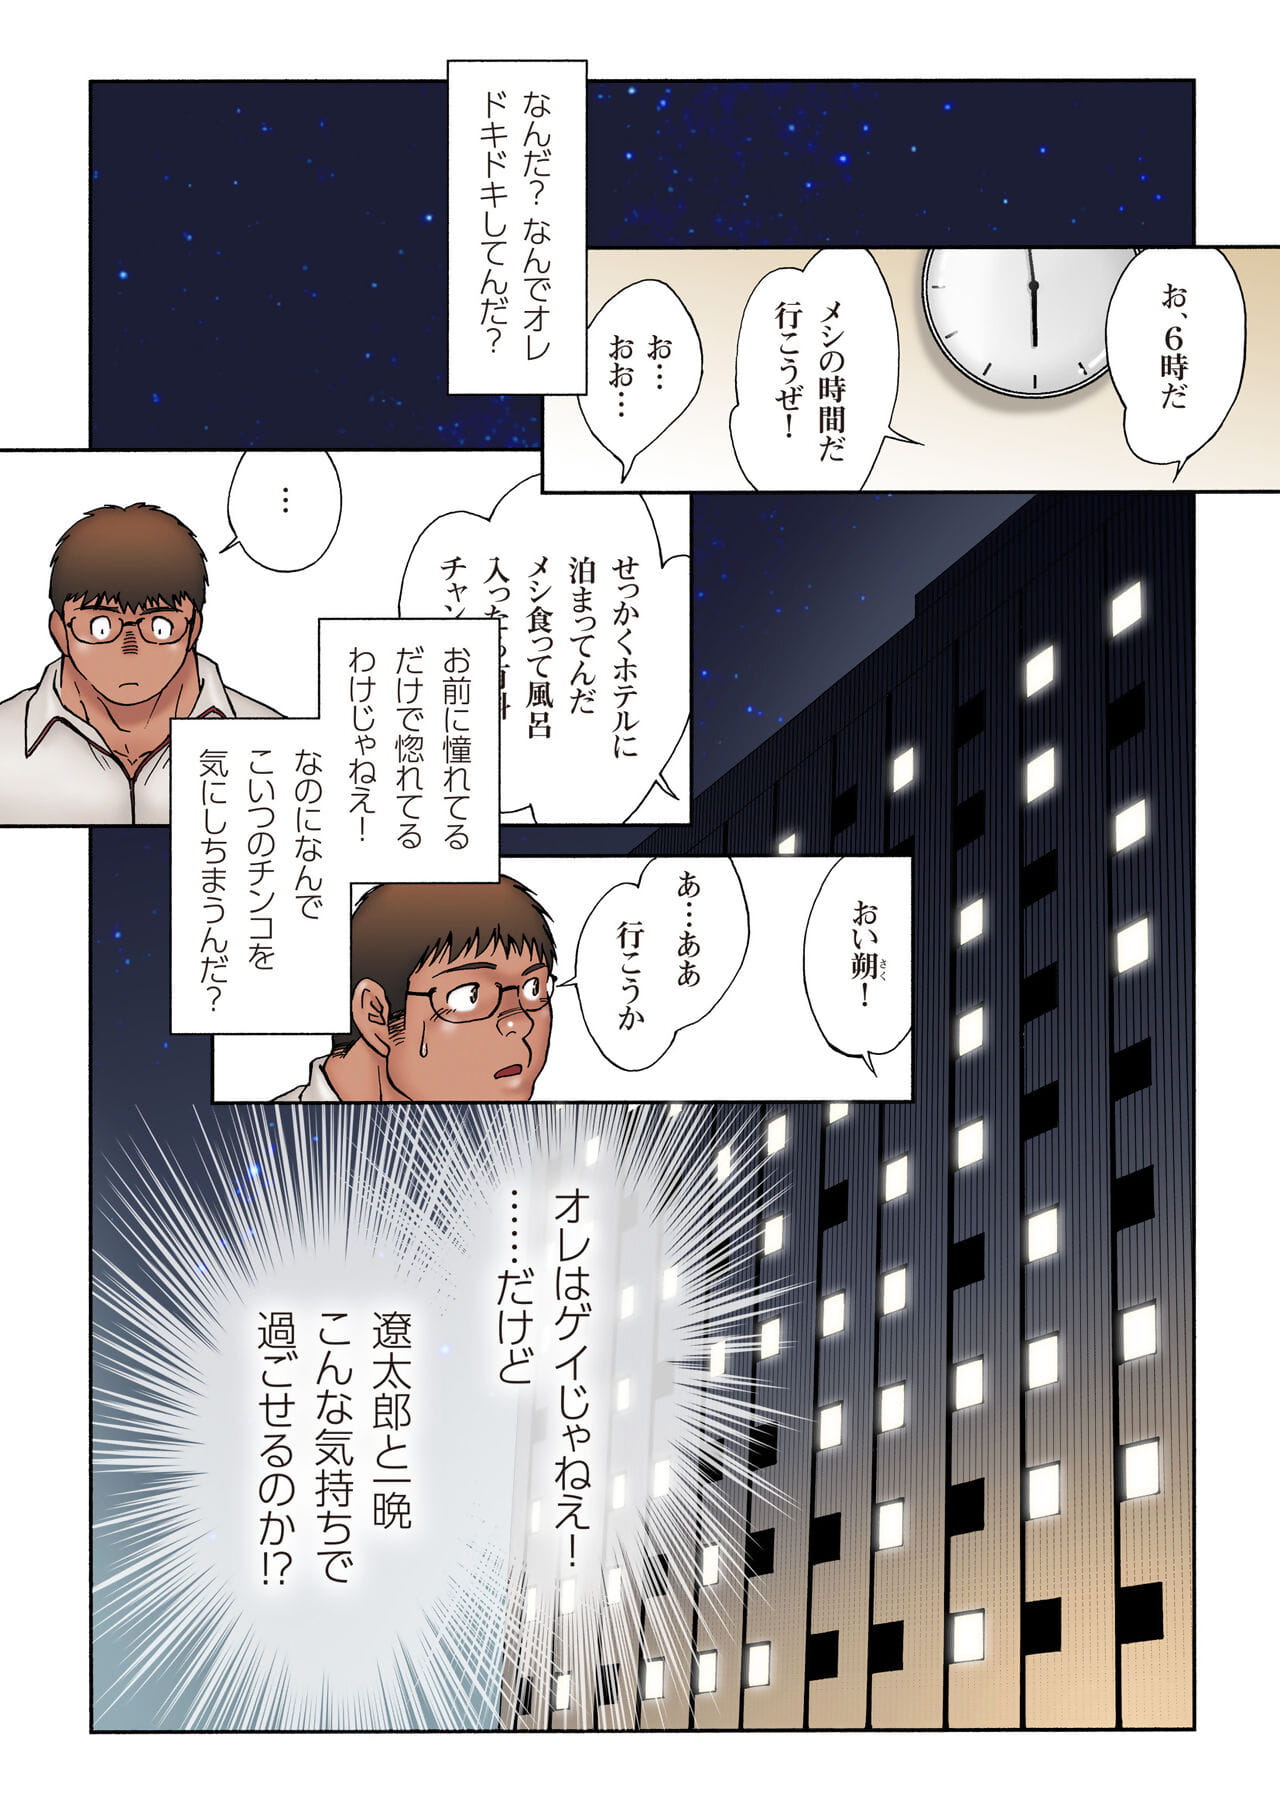 漫画以及动画之中 koukousei 举重运动员 泰开 去 没有 酒店 德 没有 葵 夜的